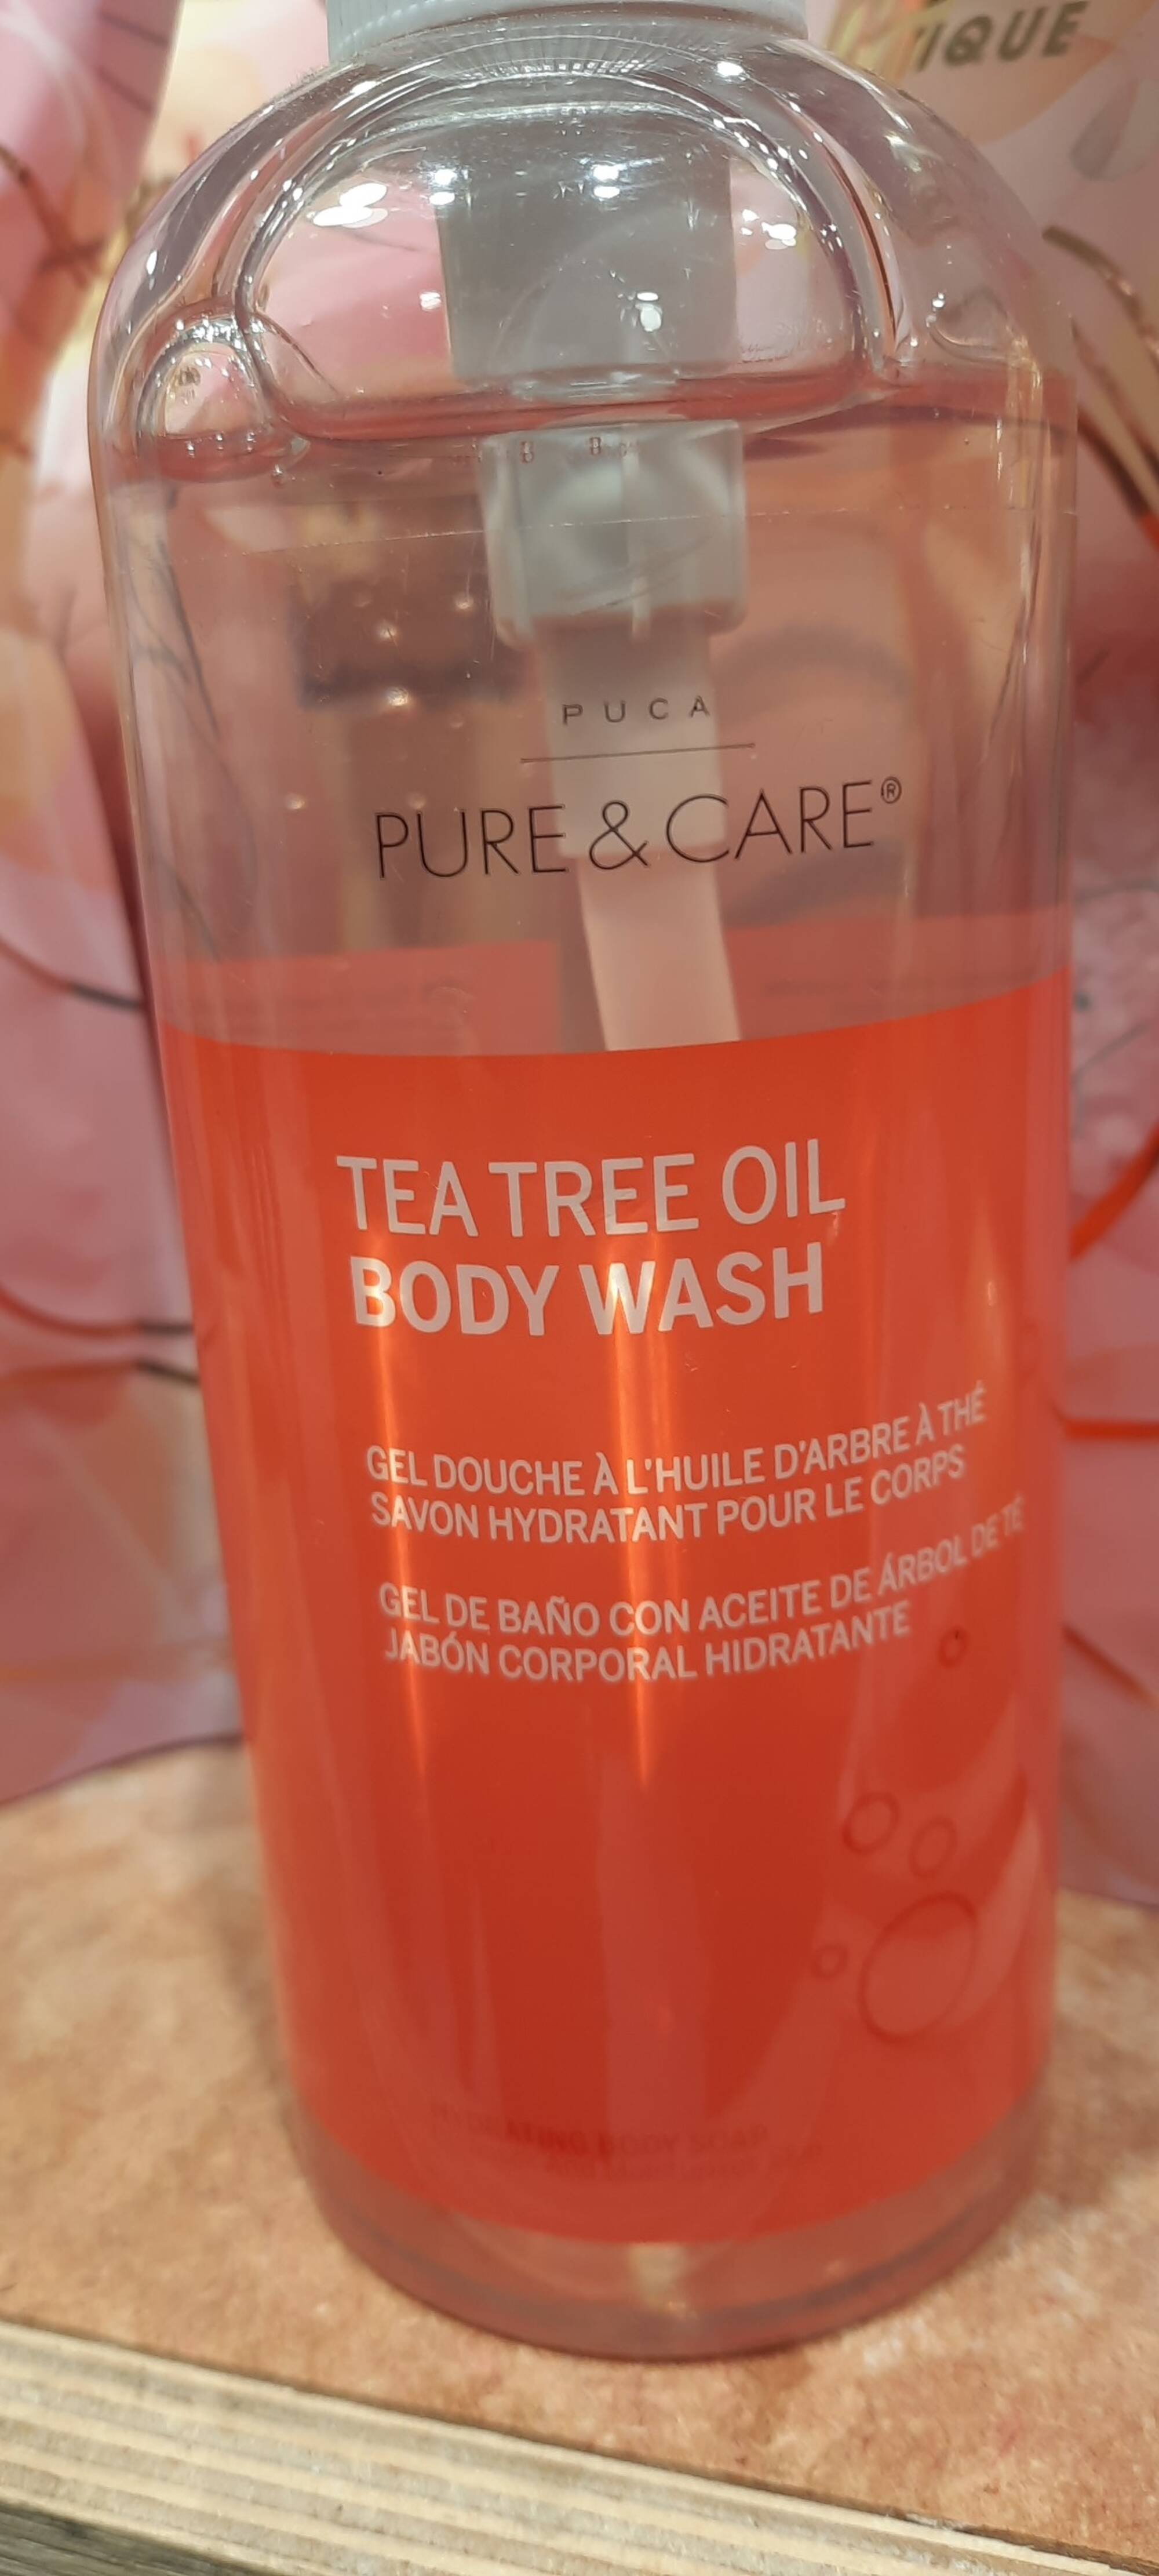 PUCA - Pure & Care - Gel douche à l'huile d'arbre à thé